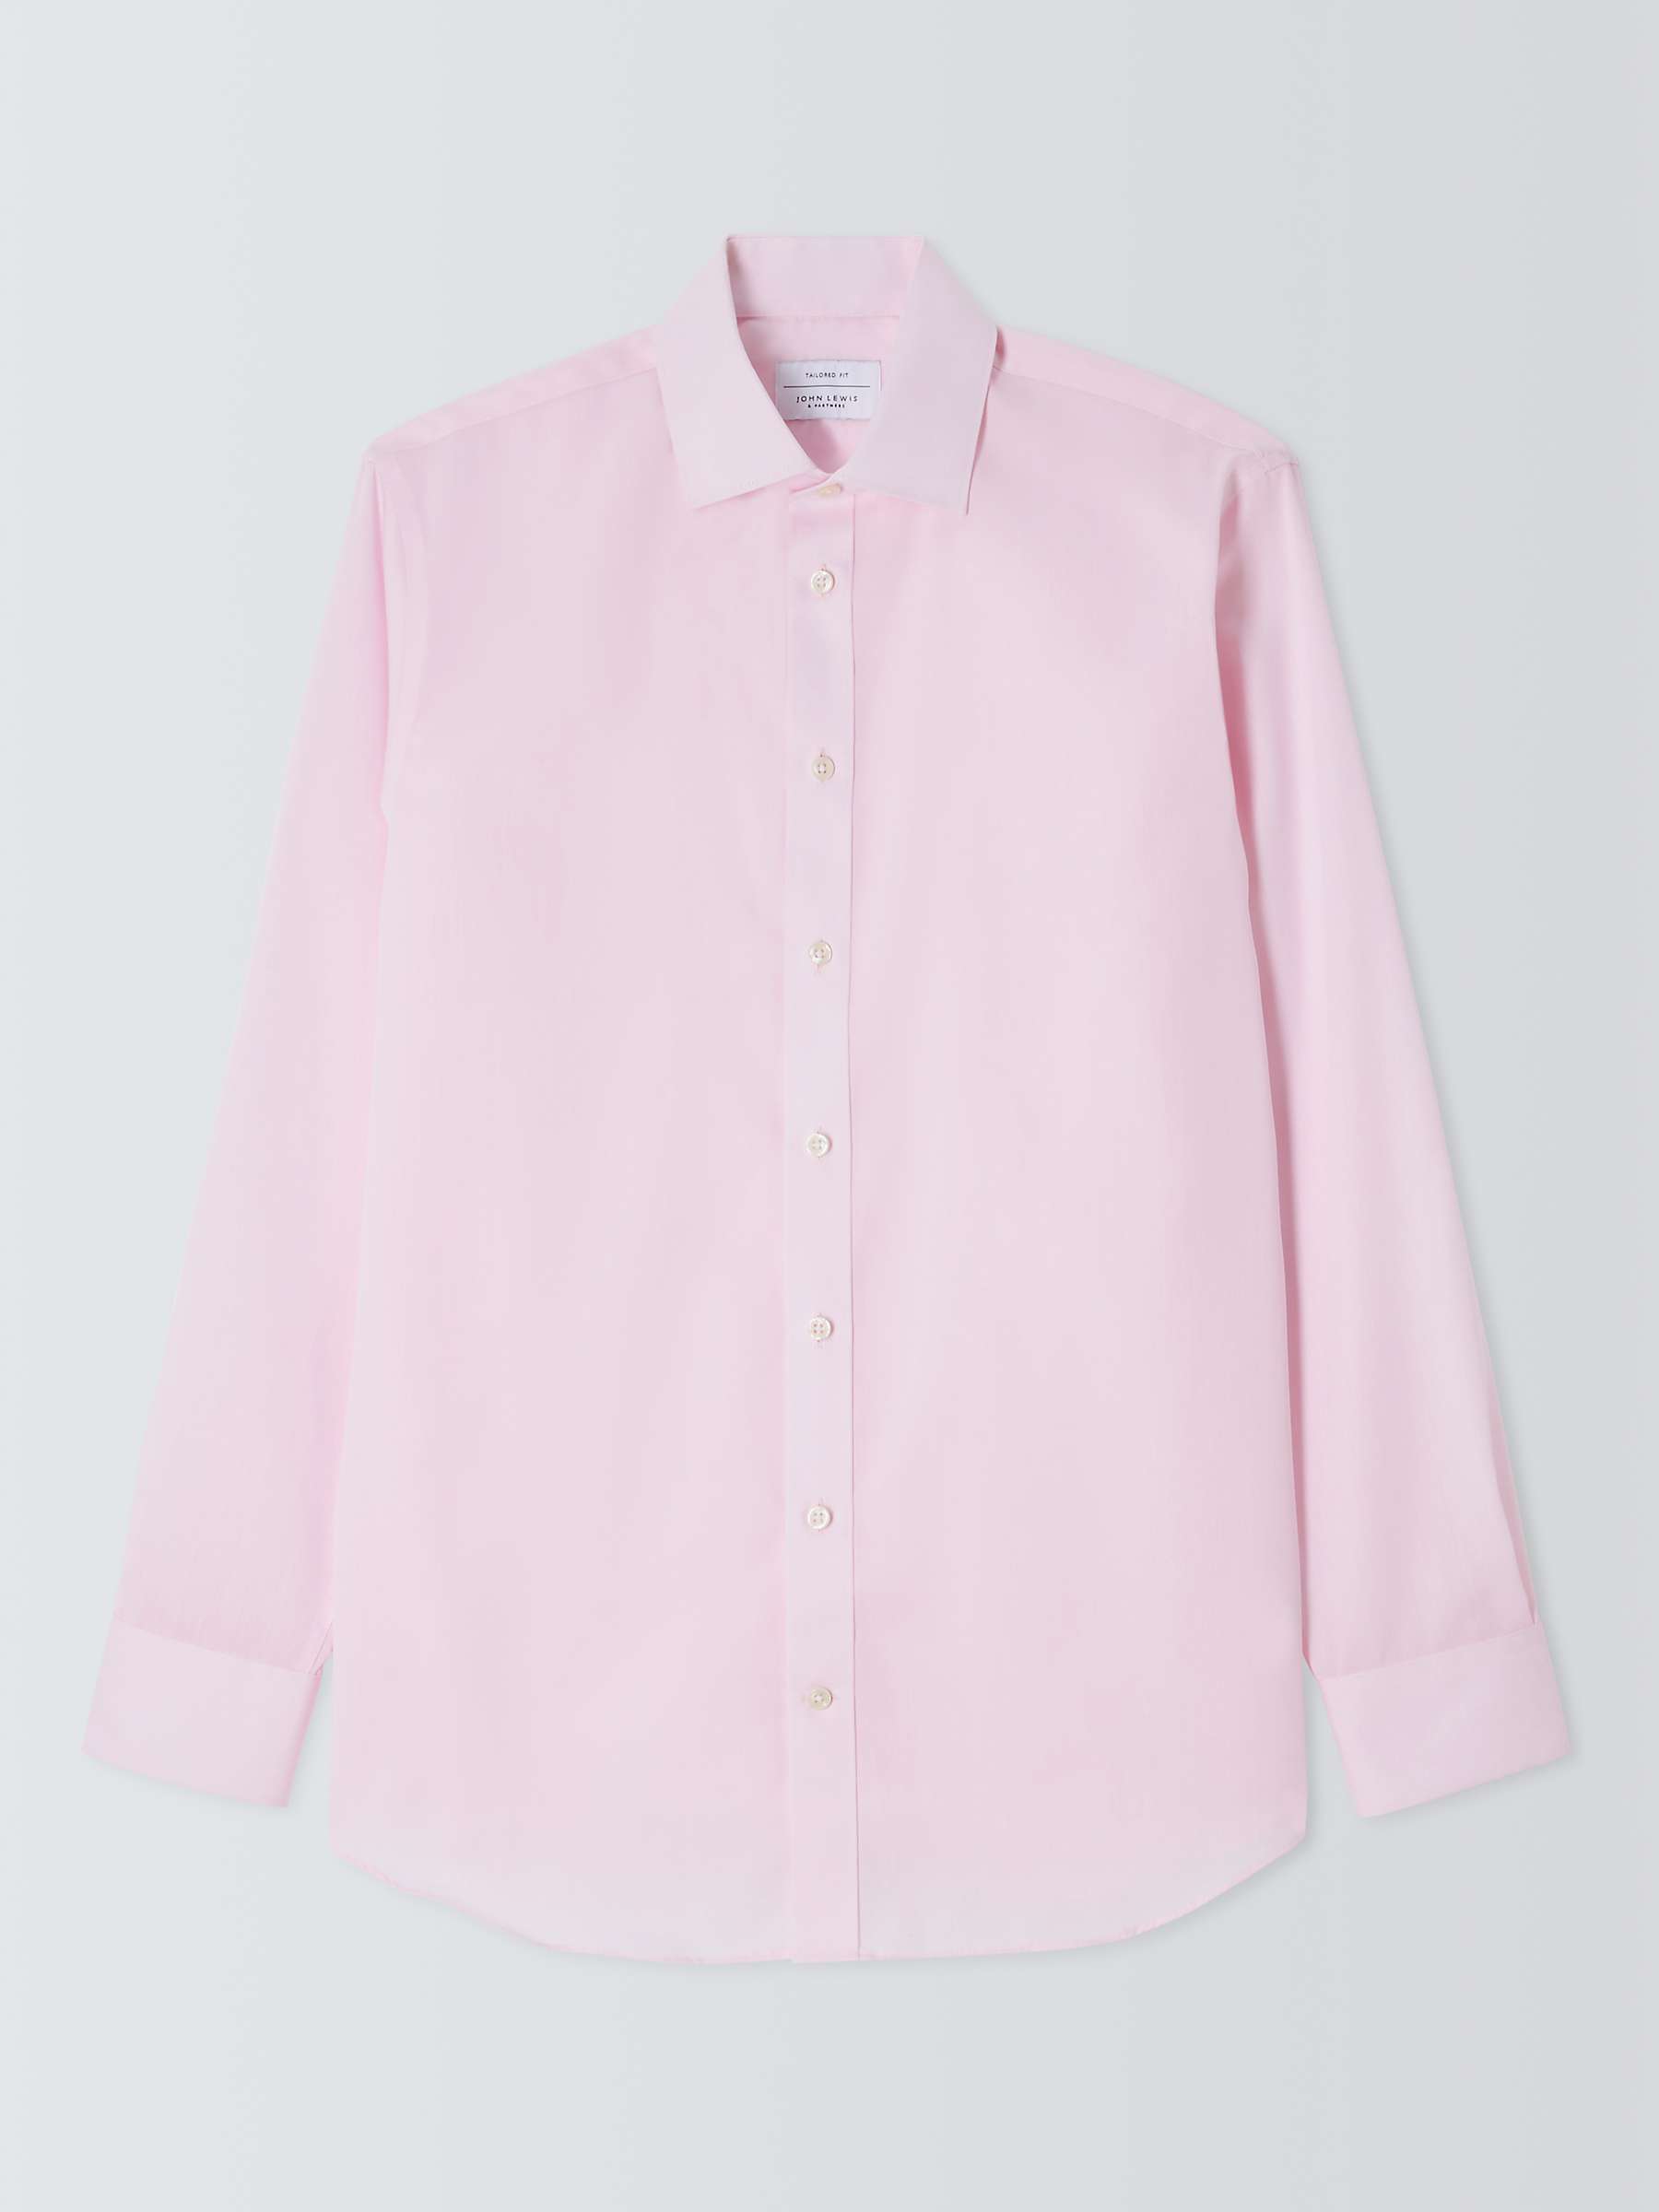 John Lewis Twill Tailored Fit Shirt, Pink at John Lewis & Partners